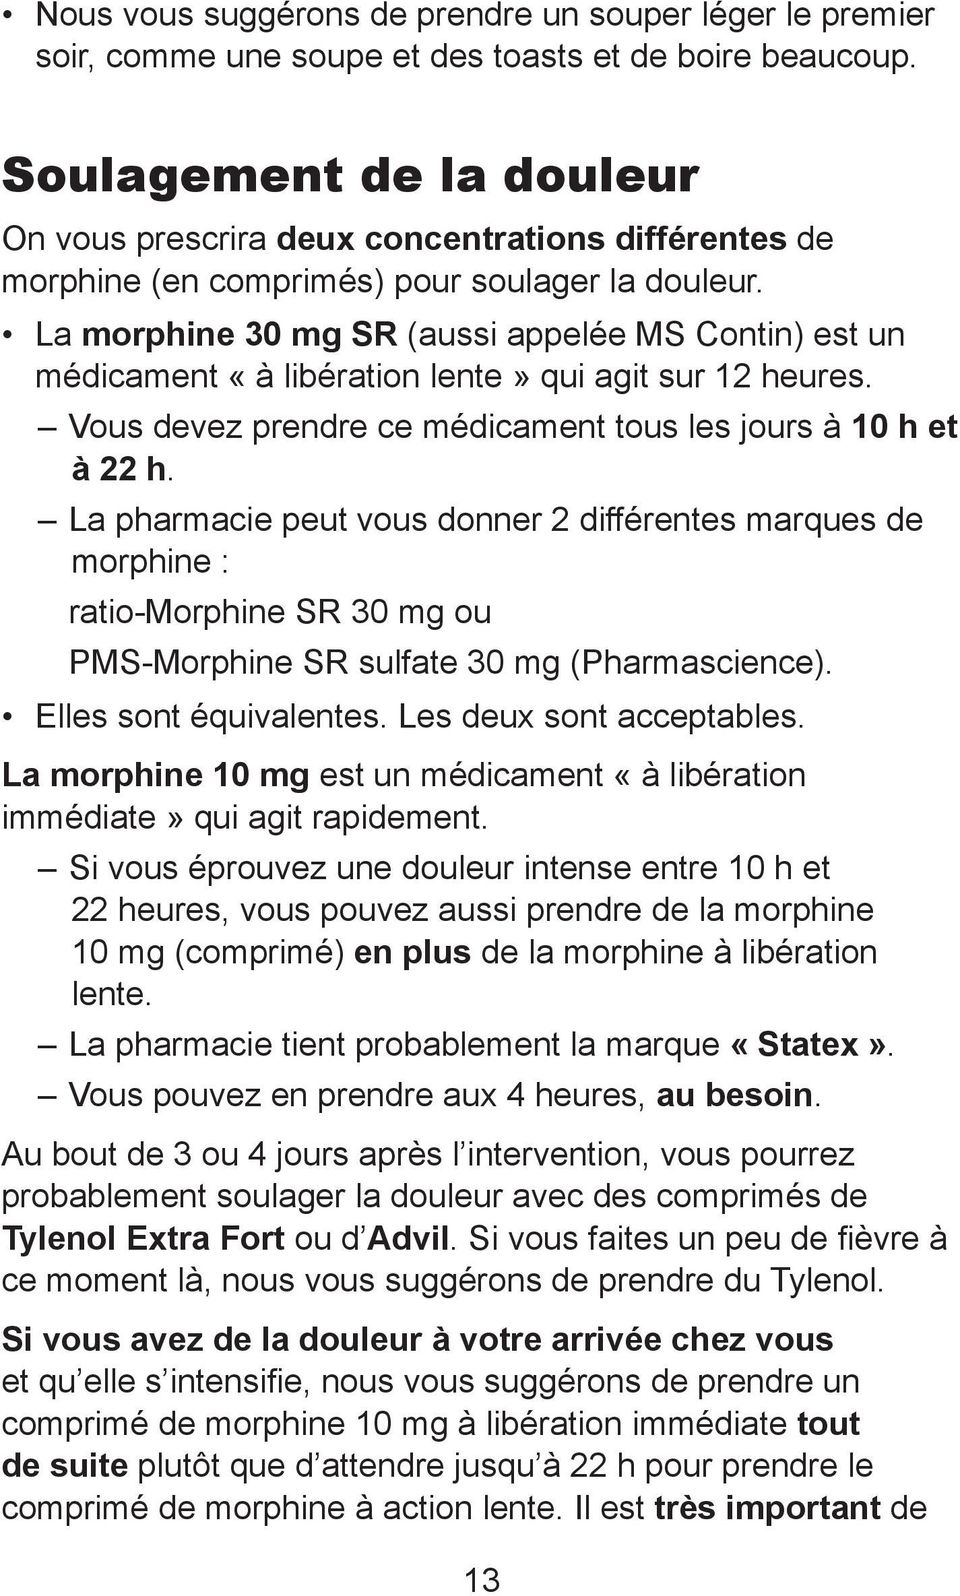 La morphine 30 mg SR (aussi appelée MS Contin) est un médicament «à libération lente» qui agit sur 12 heures. Vous devez prendre ce médicament tous les jours à 10 h et à 22 h.